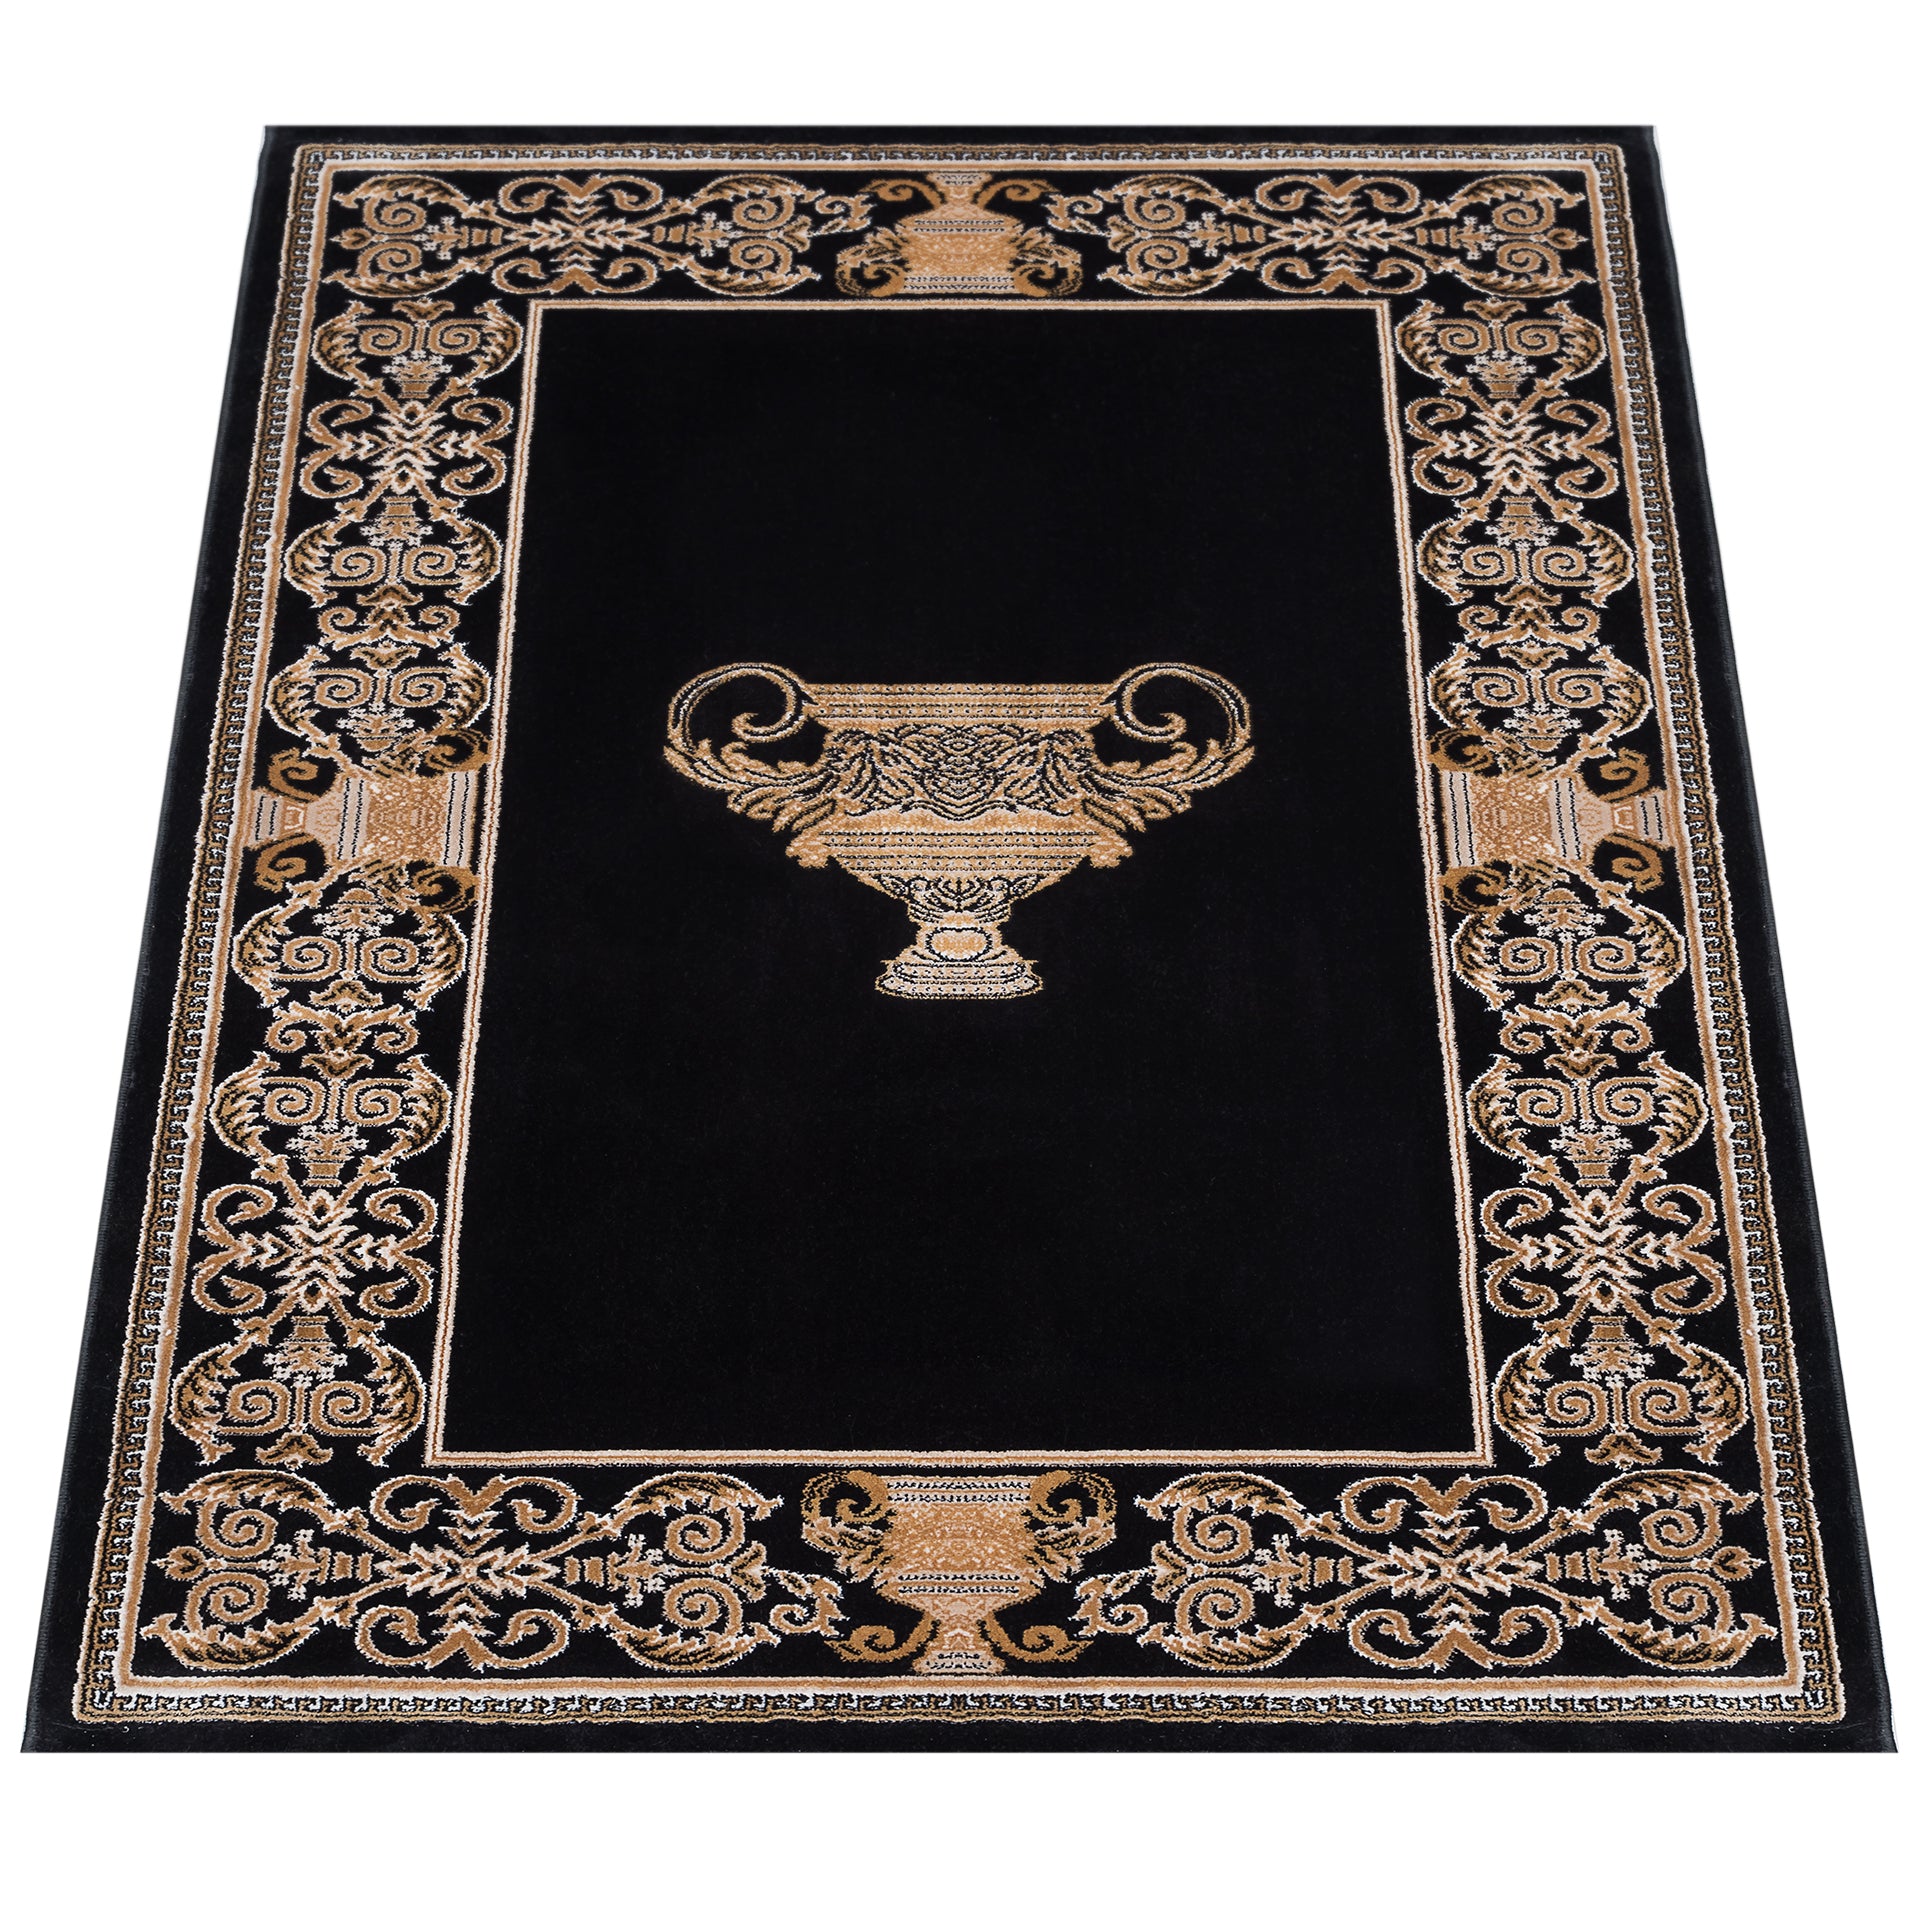 Designer Teppich mit griechischer Amphora in schwarz gold - edel und stillvoll